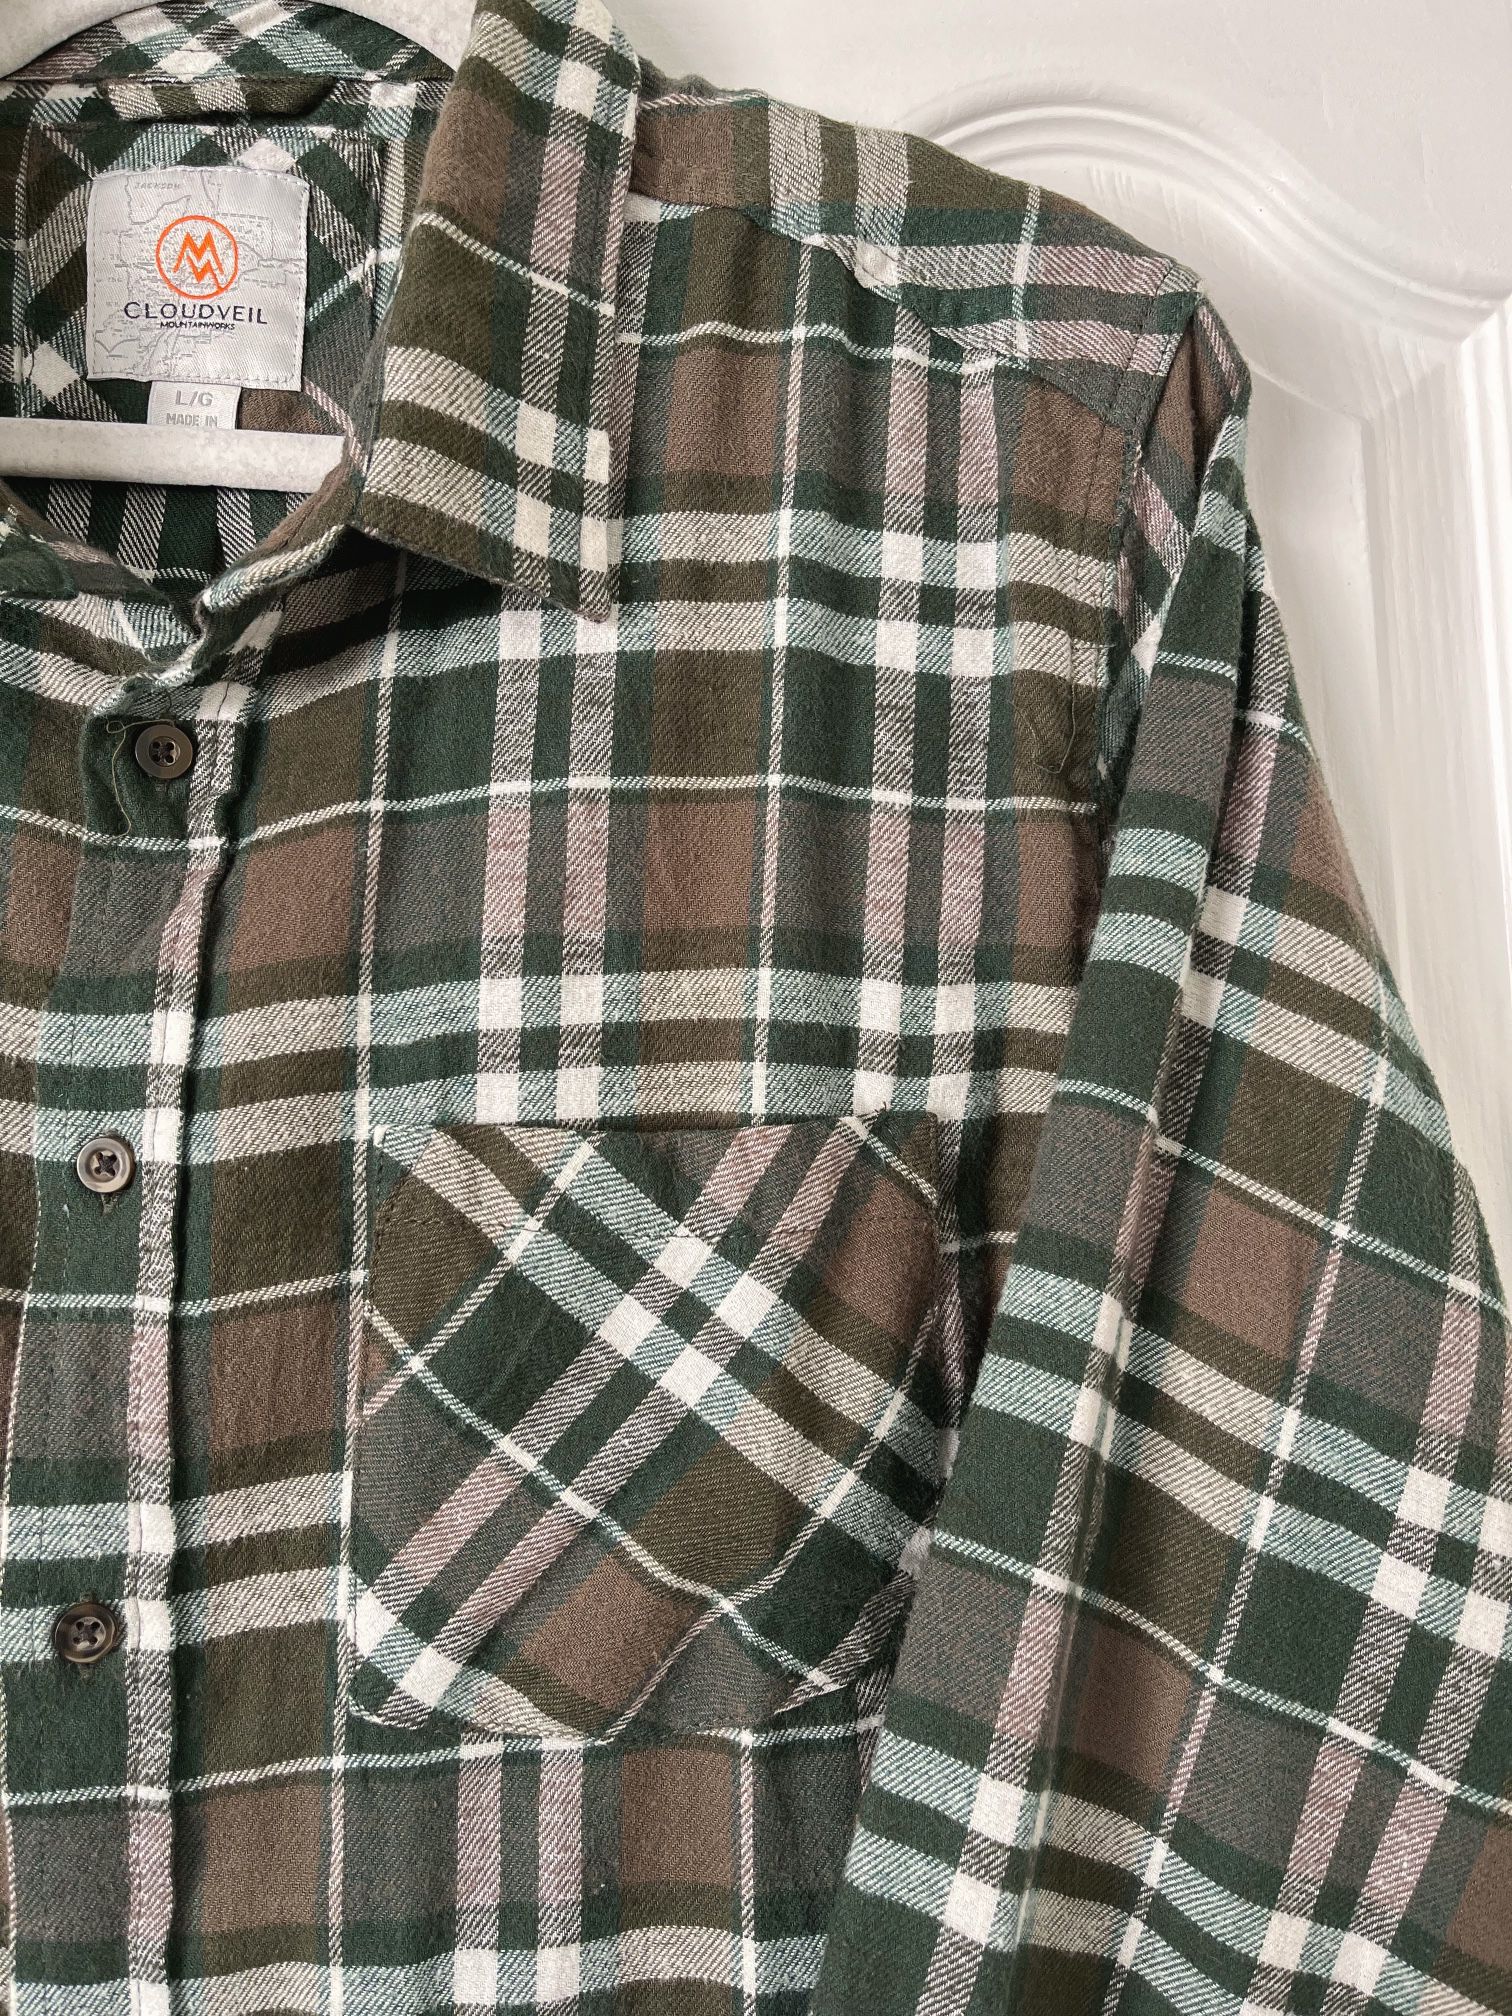 Cloudveil Plaid Shirt - Men's Size L - Brown and Green